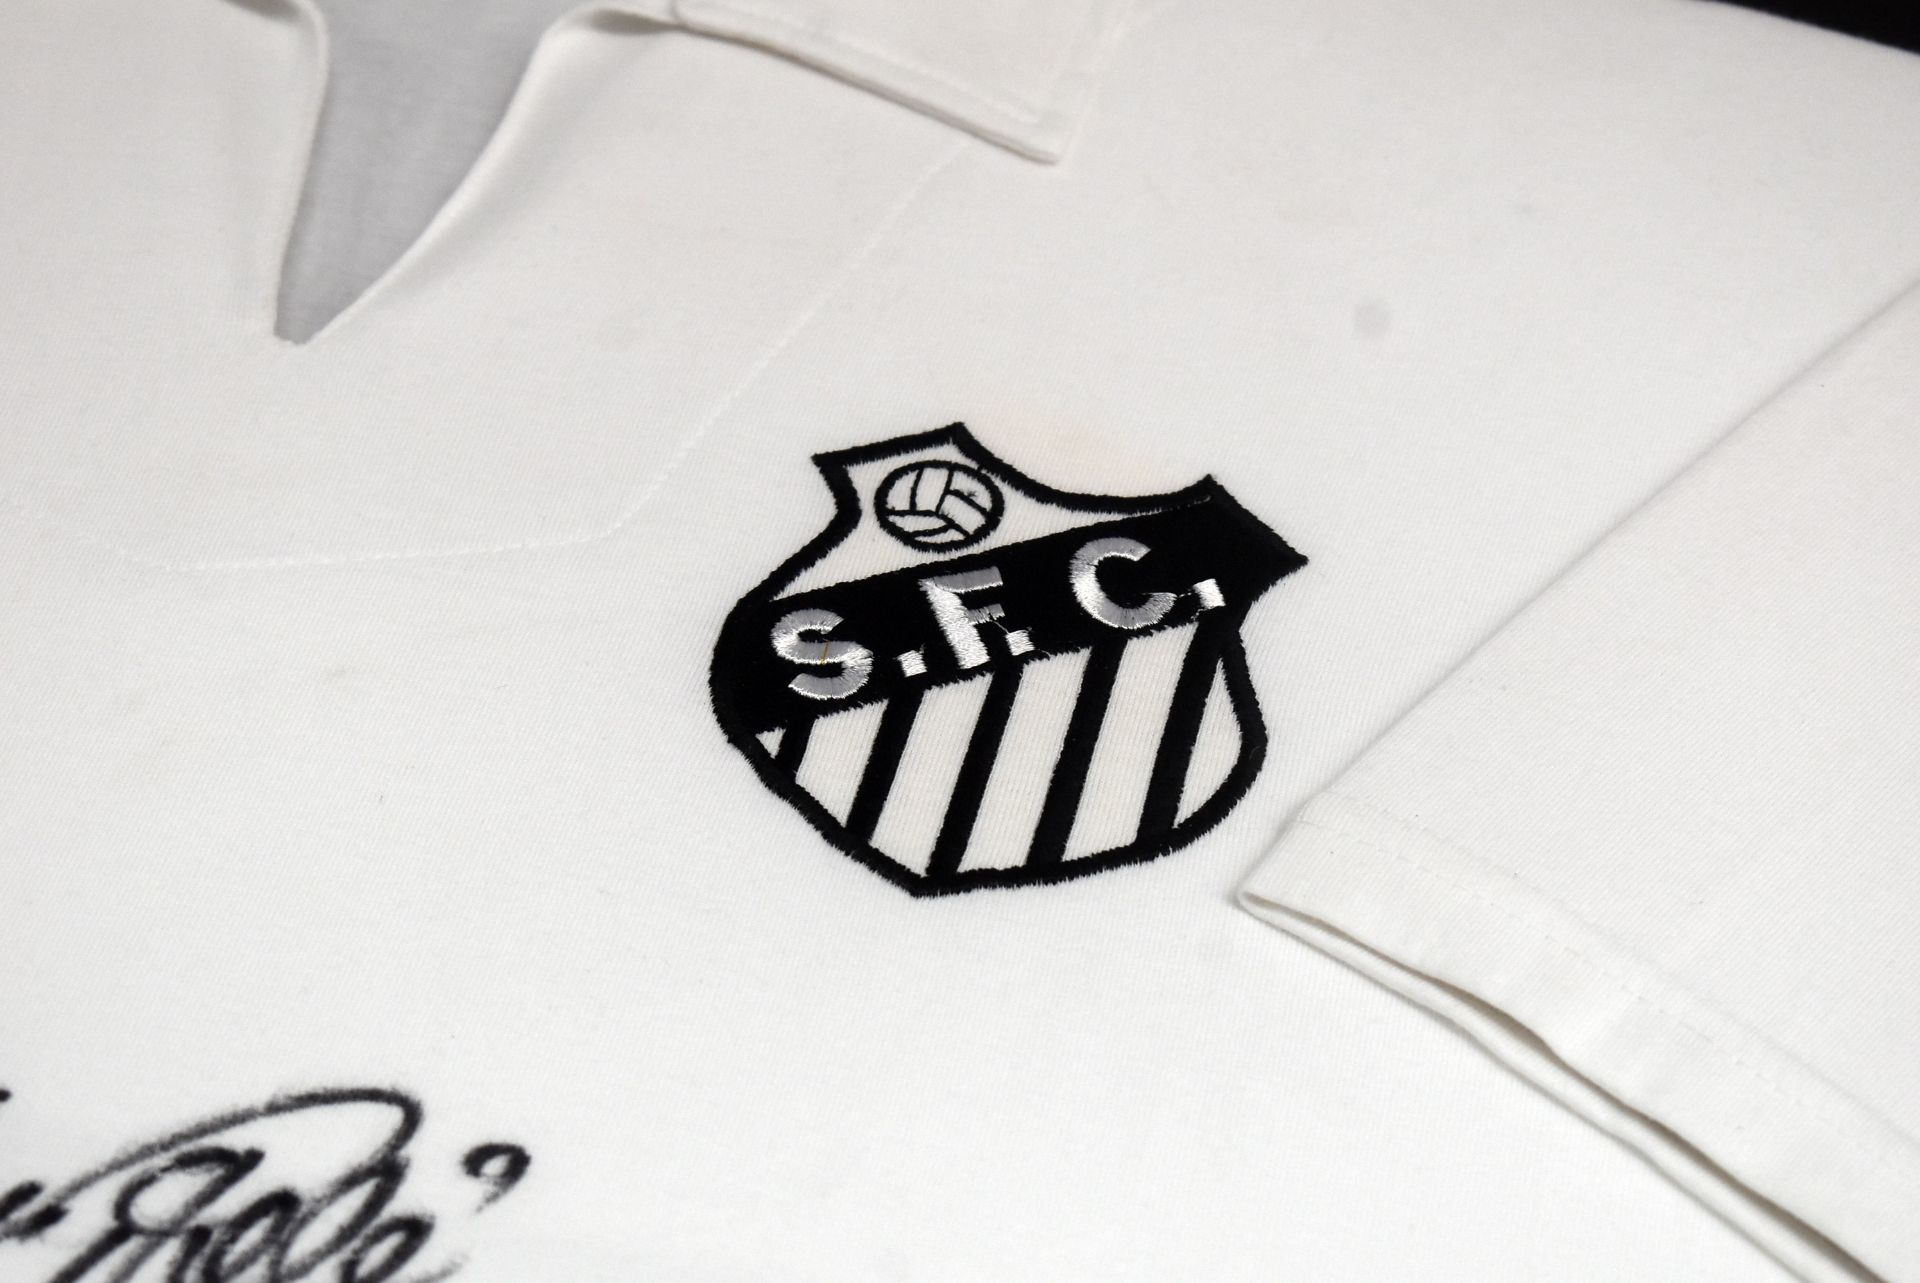 1 x Autographed 1962 Santos Football Shirt, Signed By PELE (EDSON ARANTES DO NASCIMENTO) - Image 4 of 5